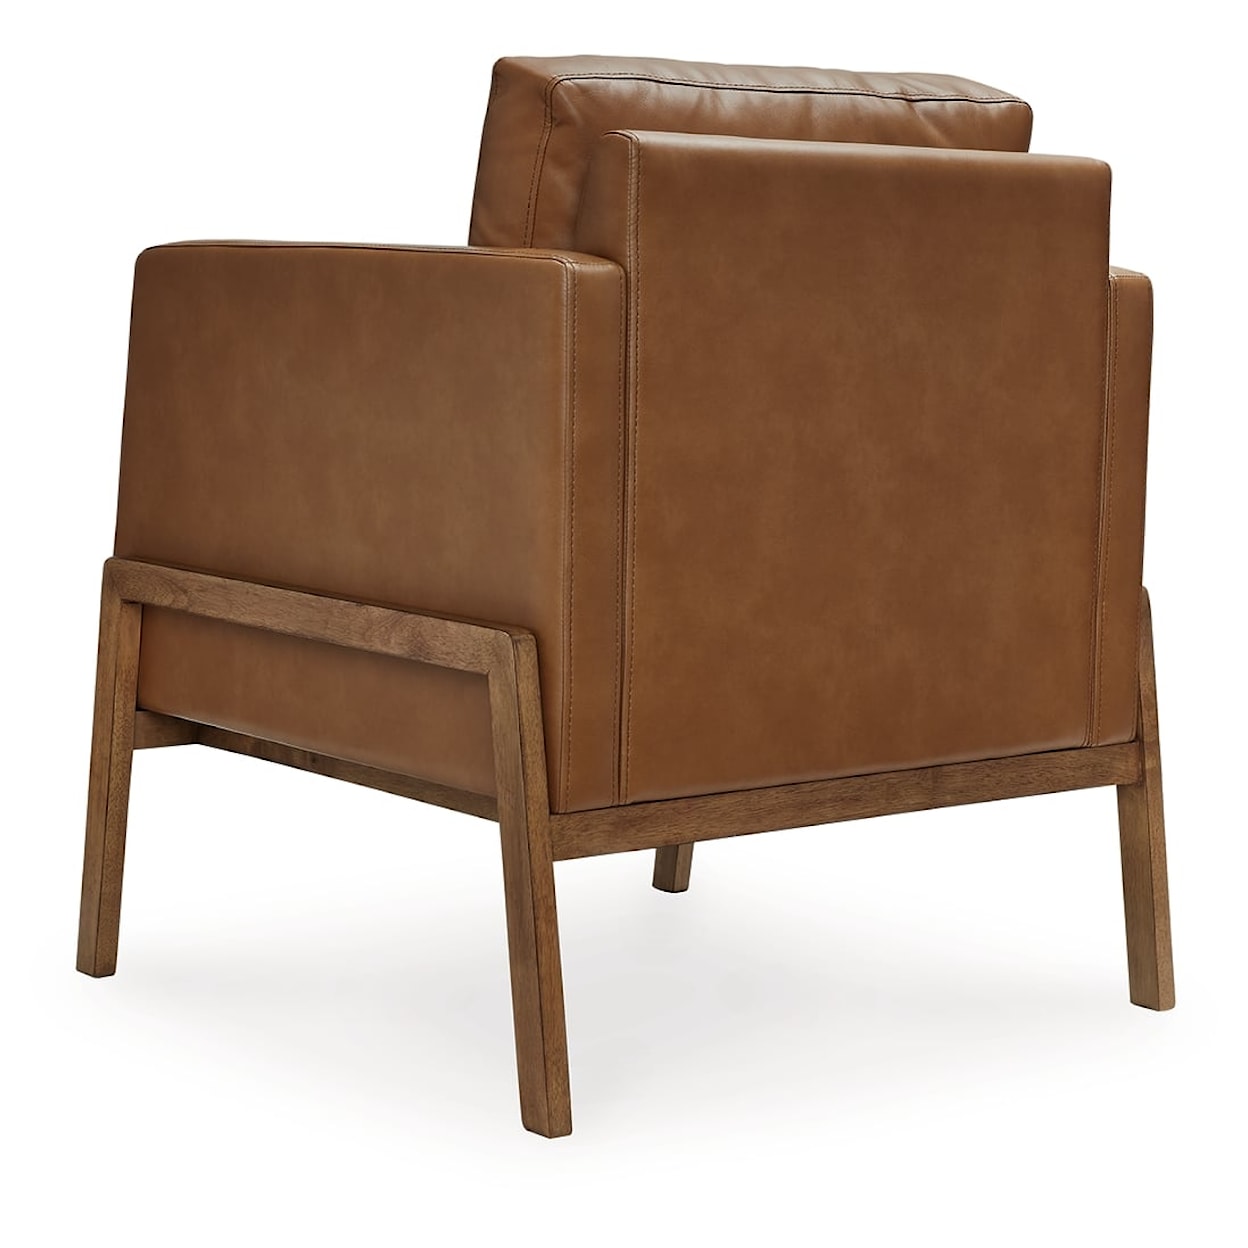 Ashley Furniture Signature Design Numund Accent Chair